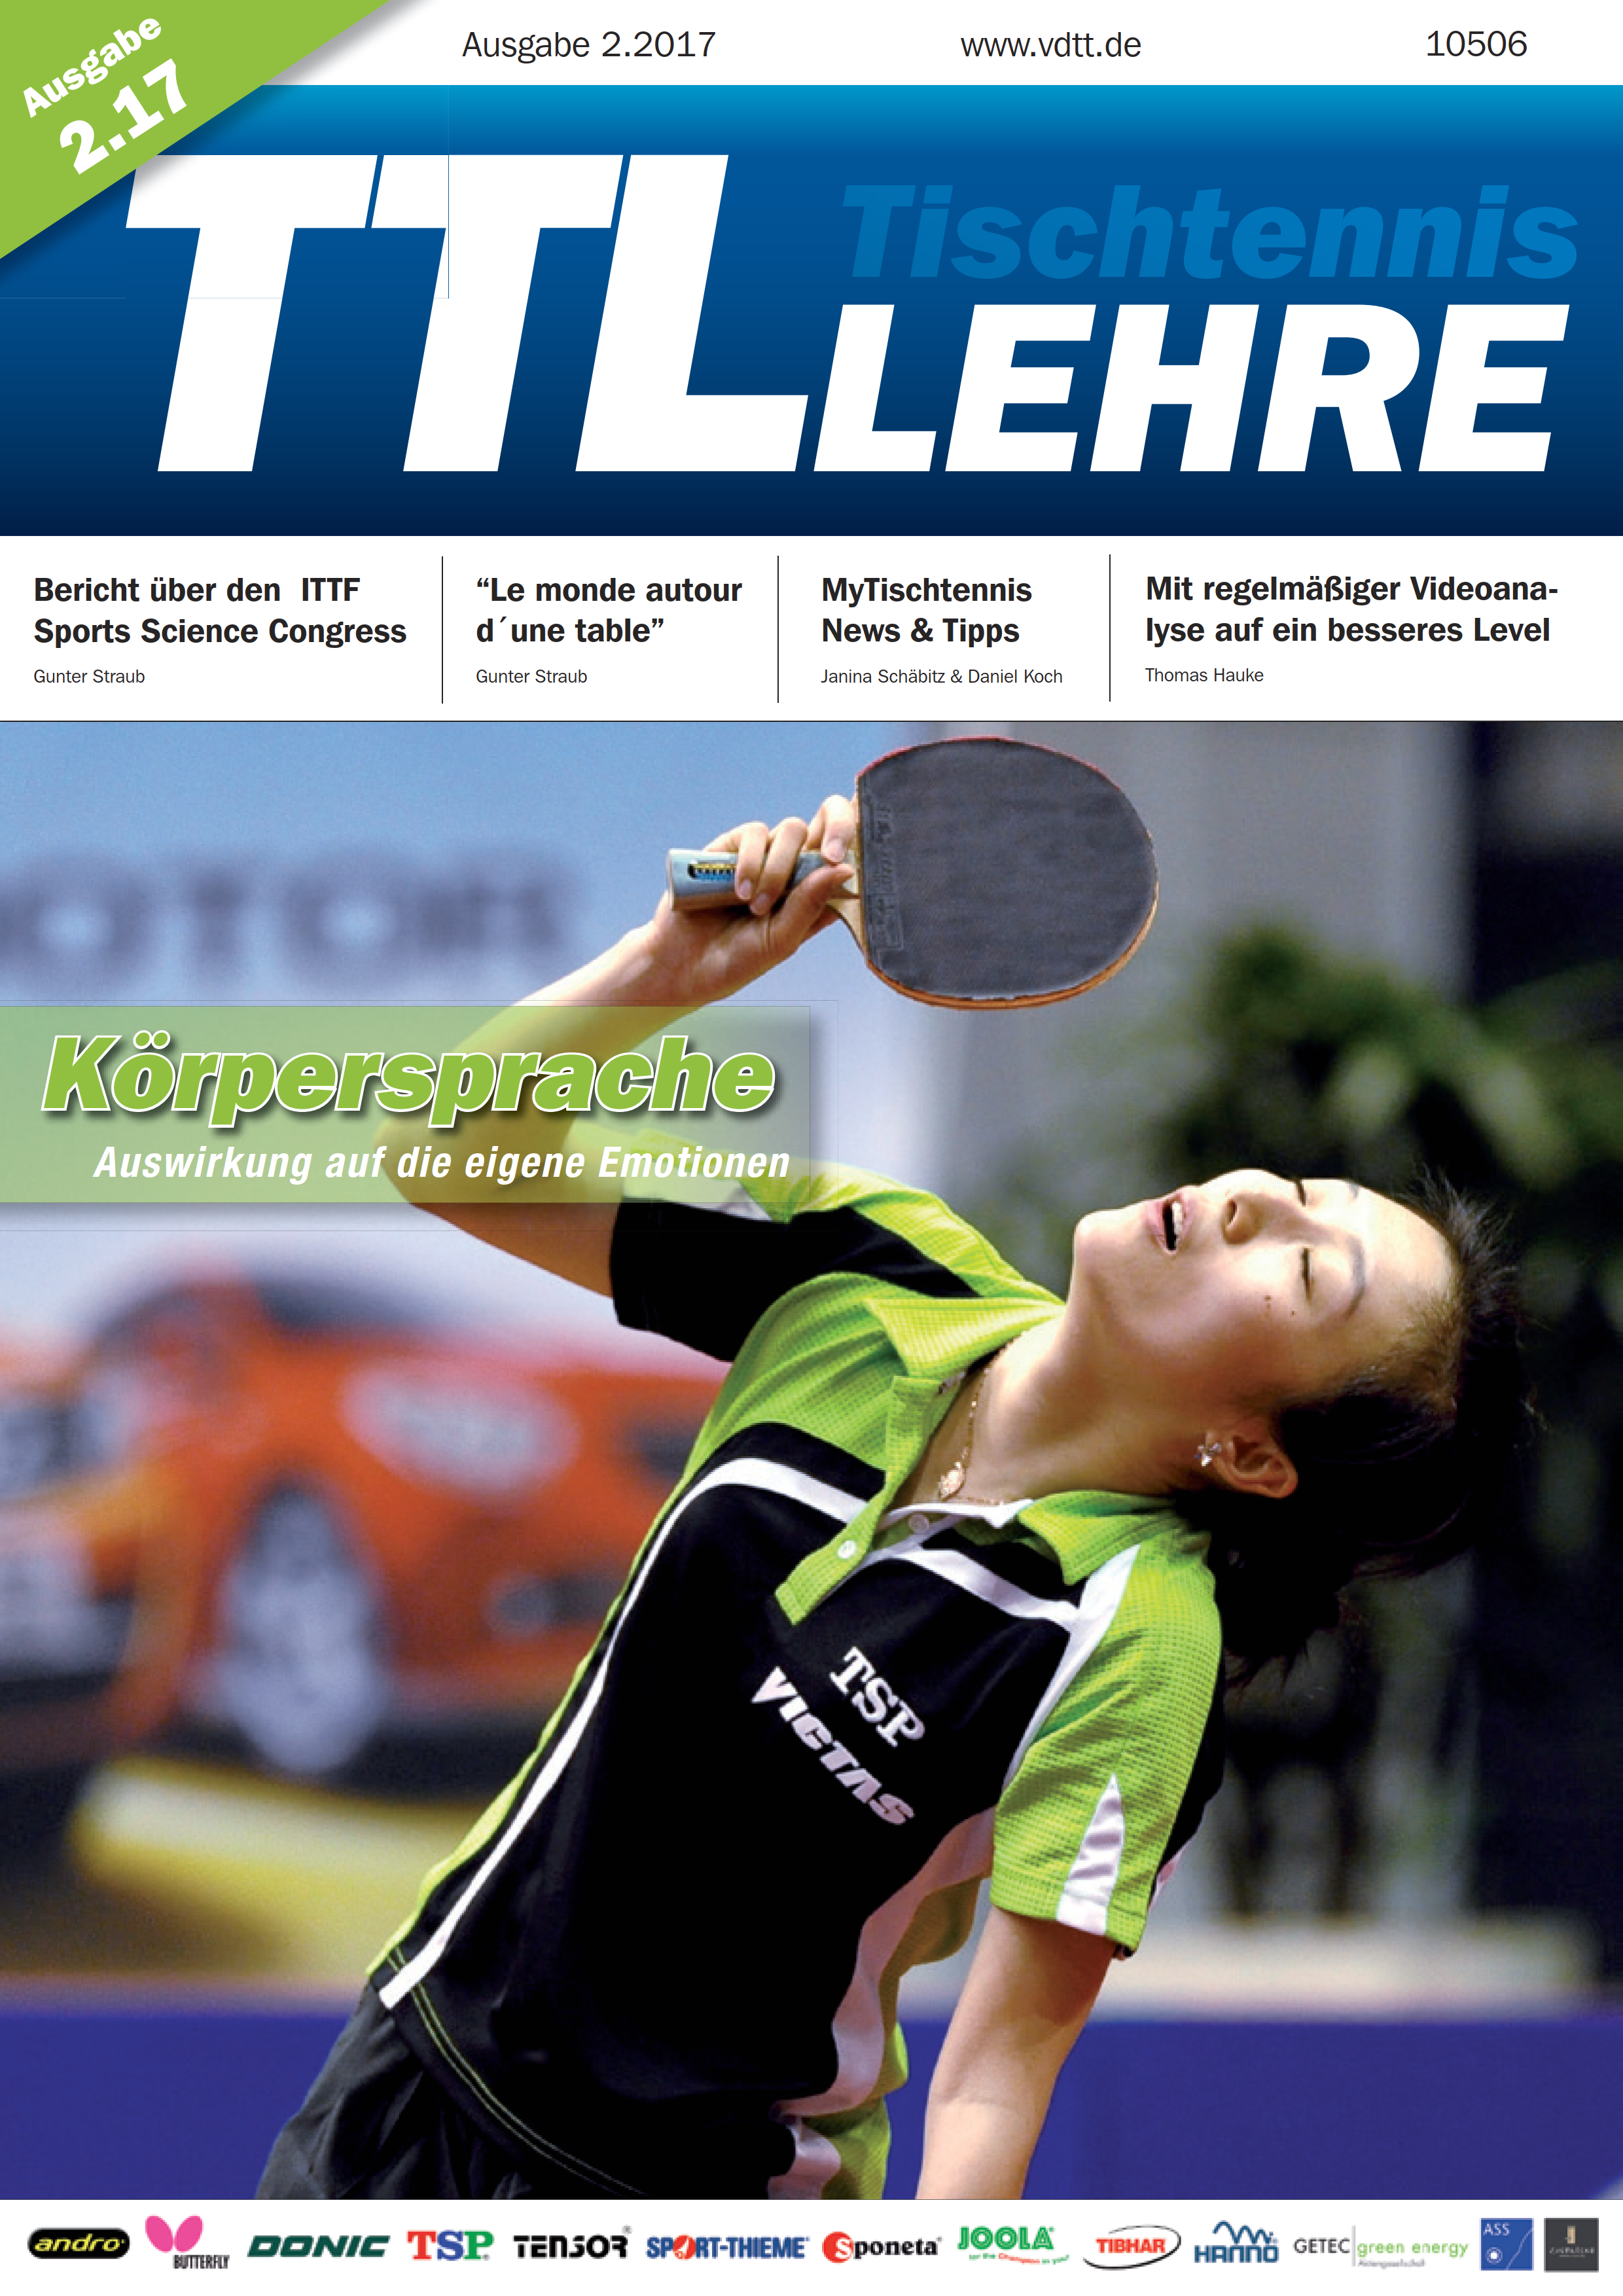 VDTT-Zeitschrift Tischtennislehre - Ausgabe: 2017-02